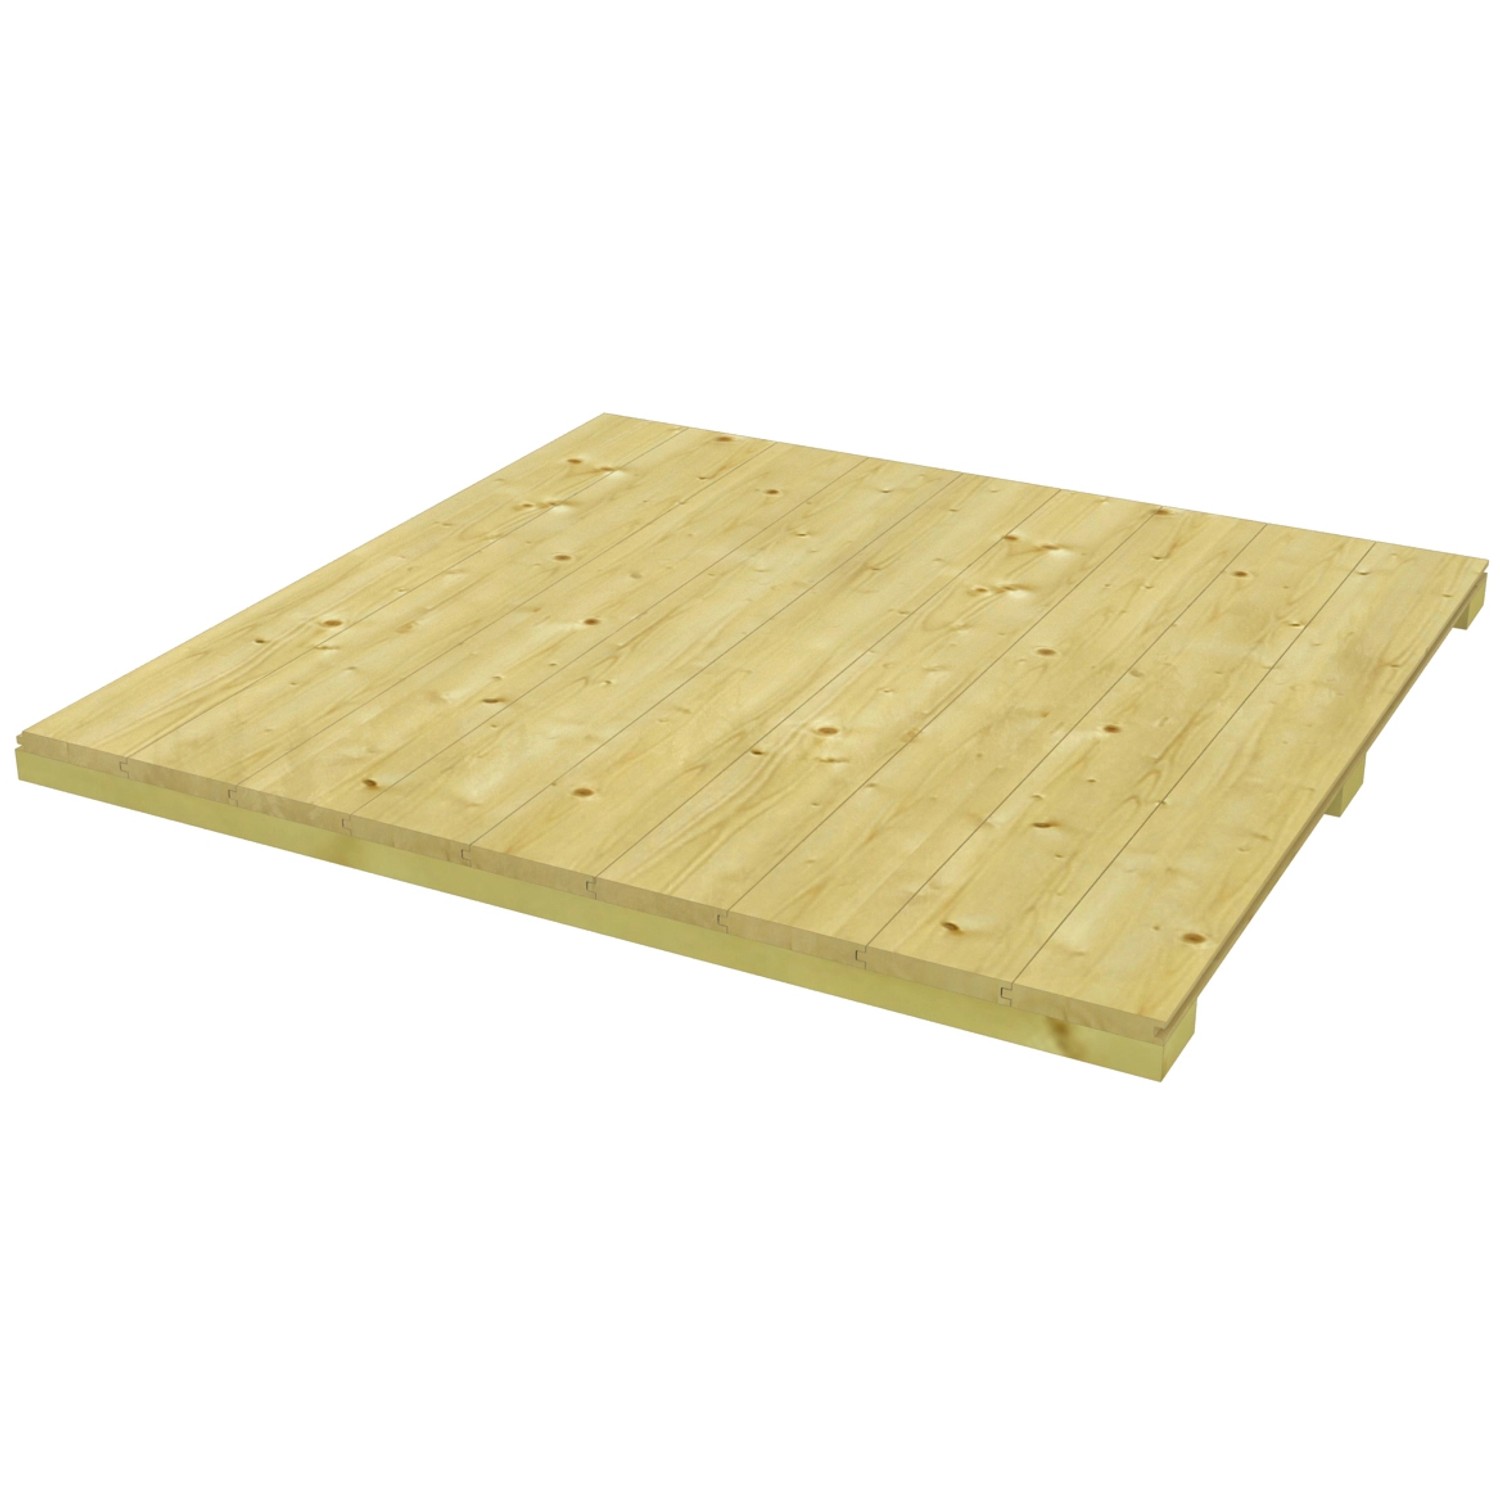 Skan Holz Fußboden für Gartenhaus CrossCube Gr. 2 B x T 253 cm x 169 cm